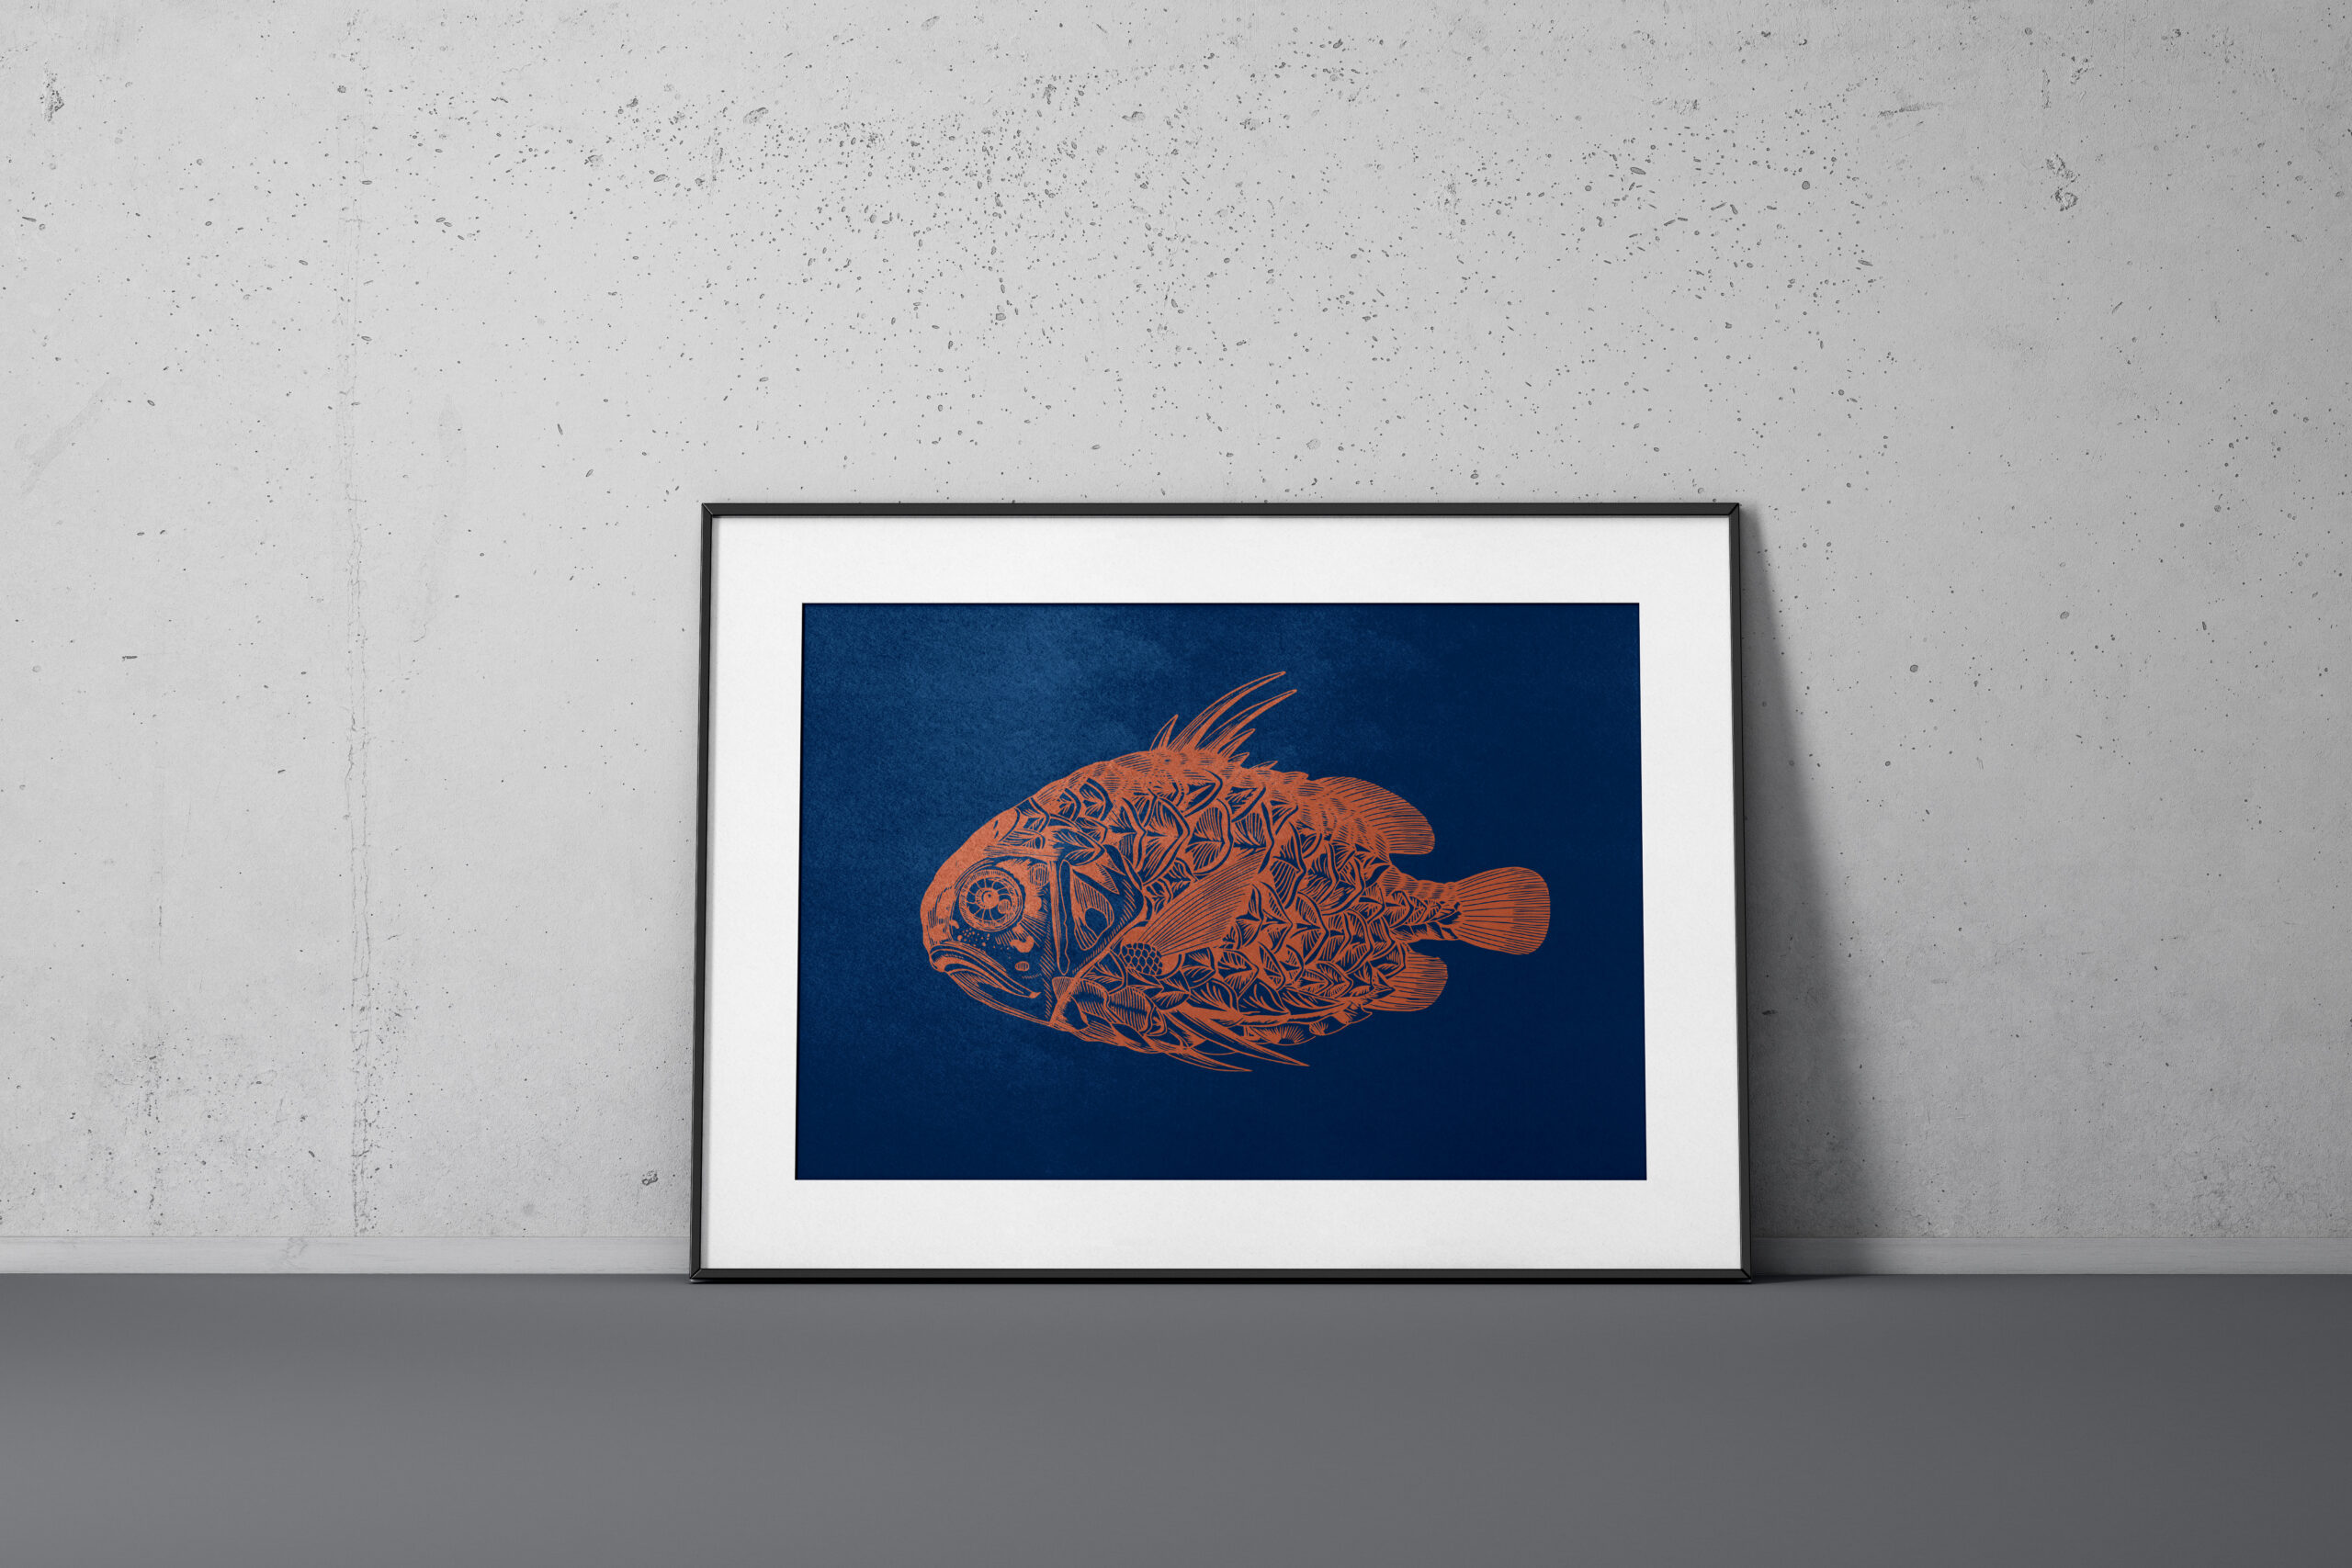 Kunstdruck im Querformat eines Fisches in Kupfer auf dunkel blauen Papier im Bilderrahmen vor einer grauen Wand.